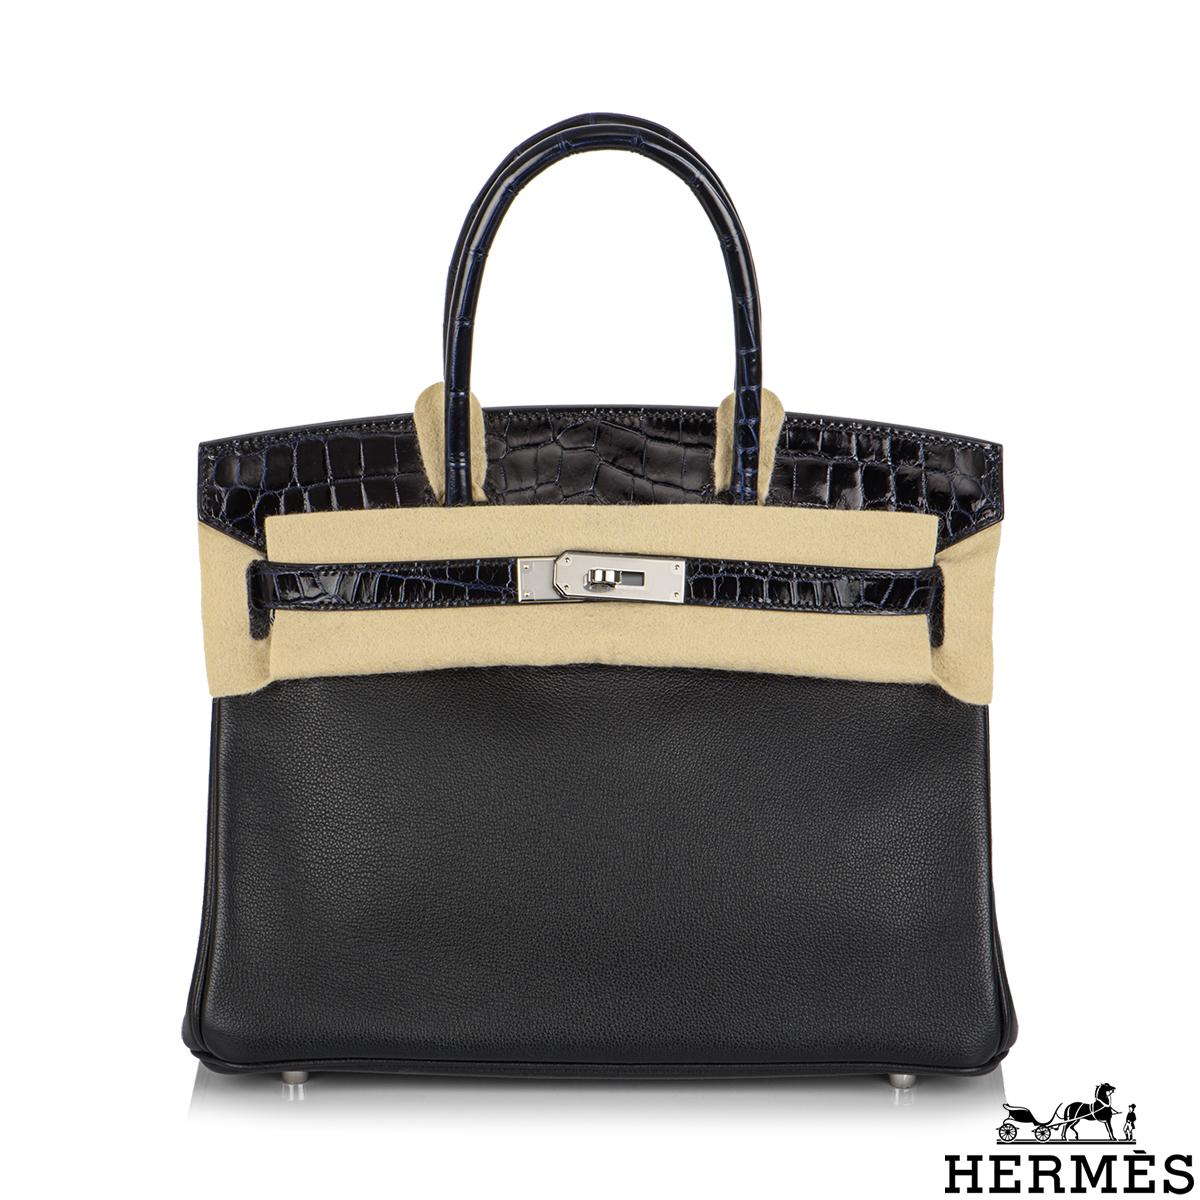 Un magnifique sac Hermès Touch Birkin 30 cm. L'extérieur de ce Birkin 